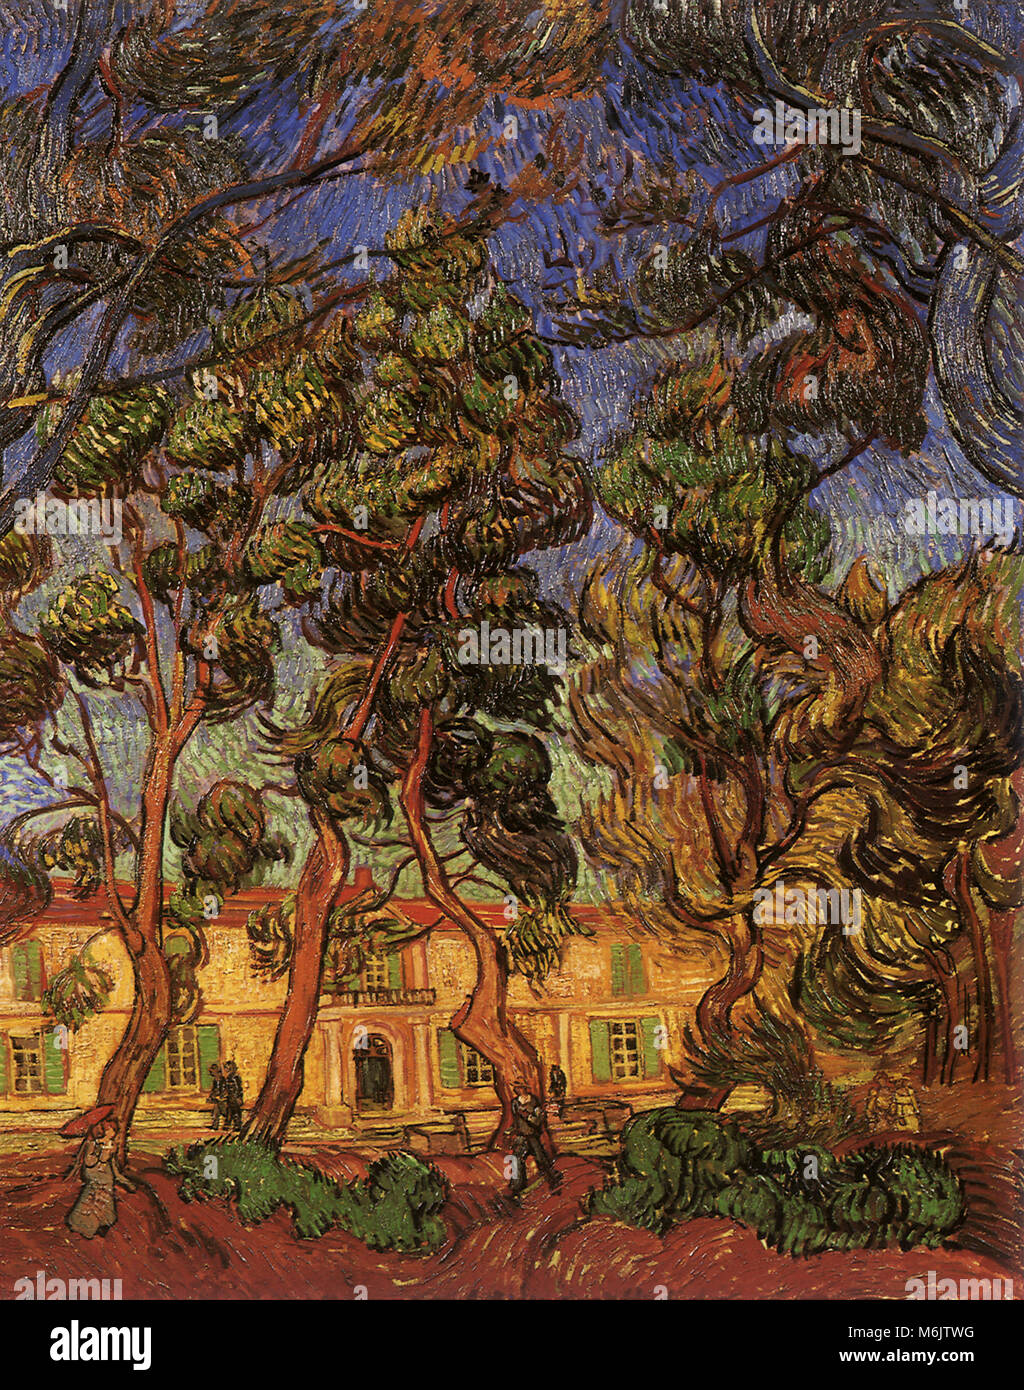 Les arbres en face de l'asile à Saint-Rémy, Van Gogh, Vincent Willem, 1889. Banque D'Images